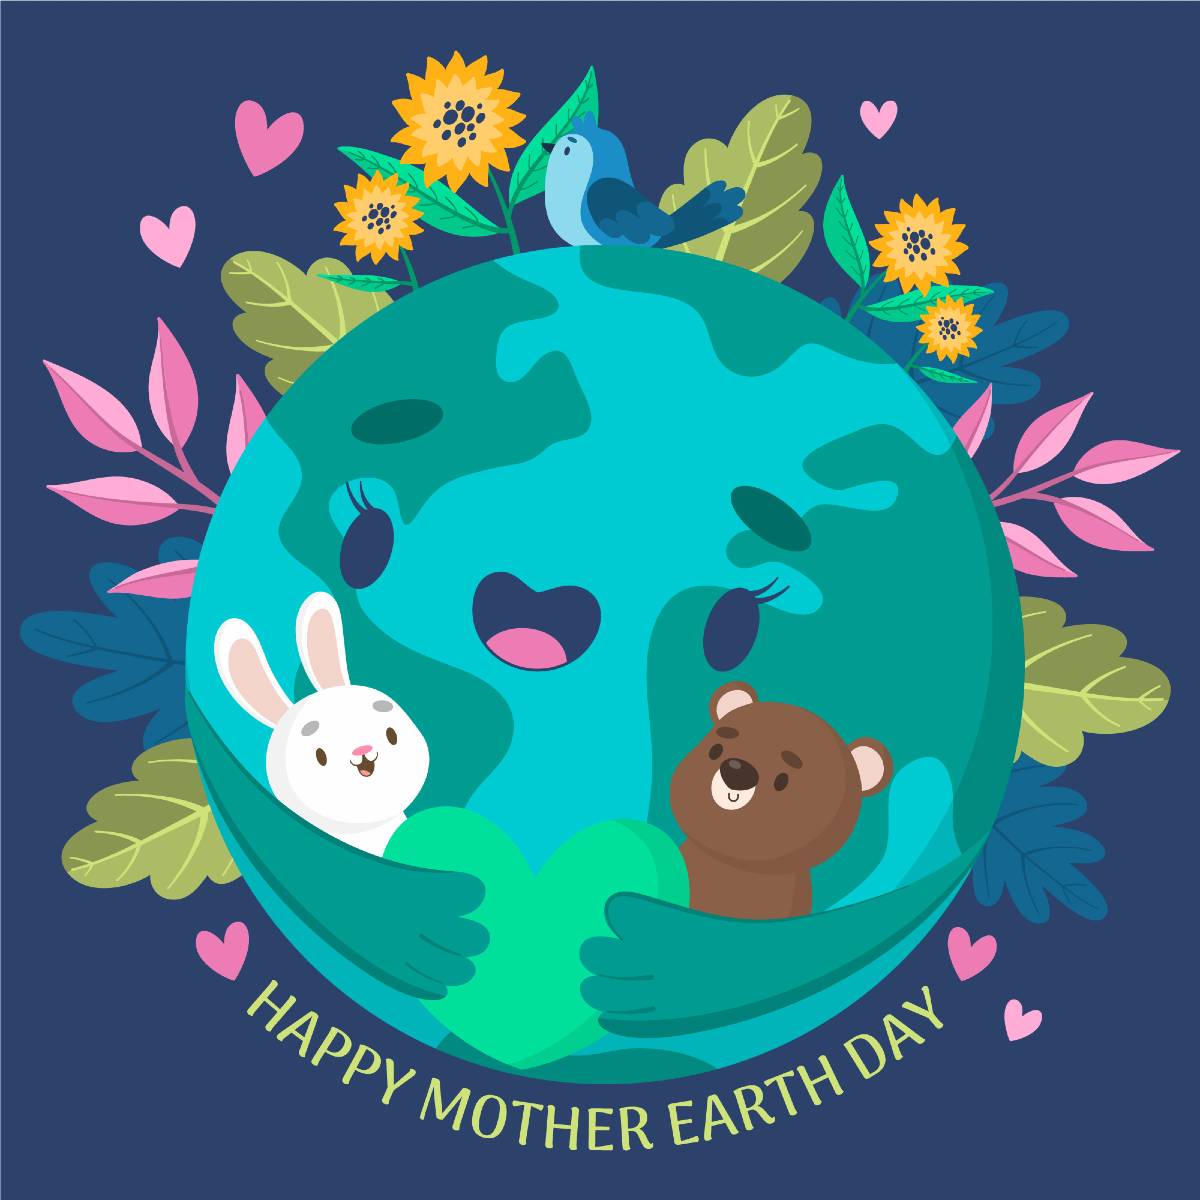 Día de la Tierra: Así puedes cuidarla desde casa